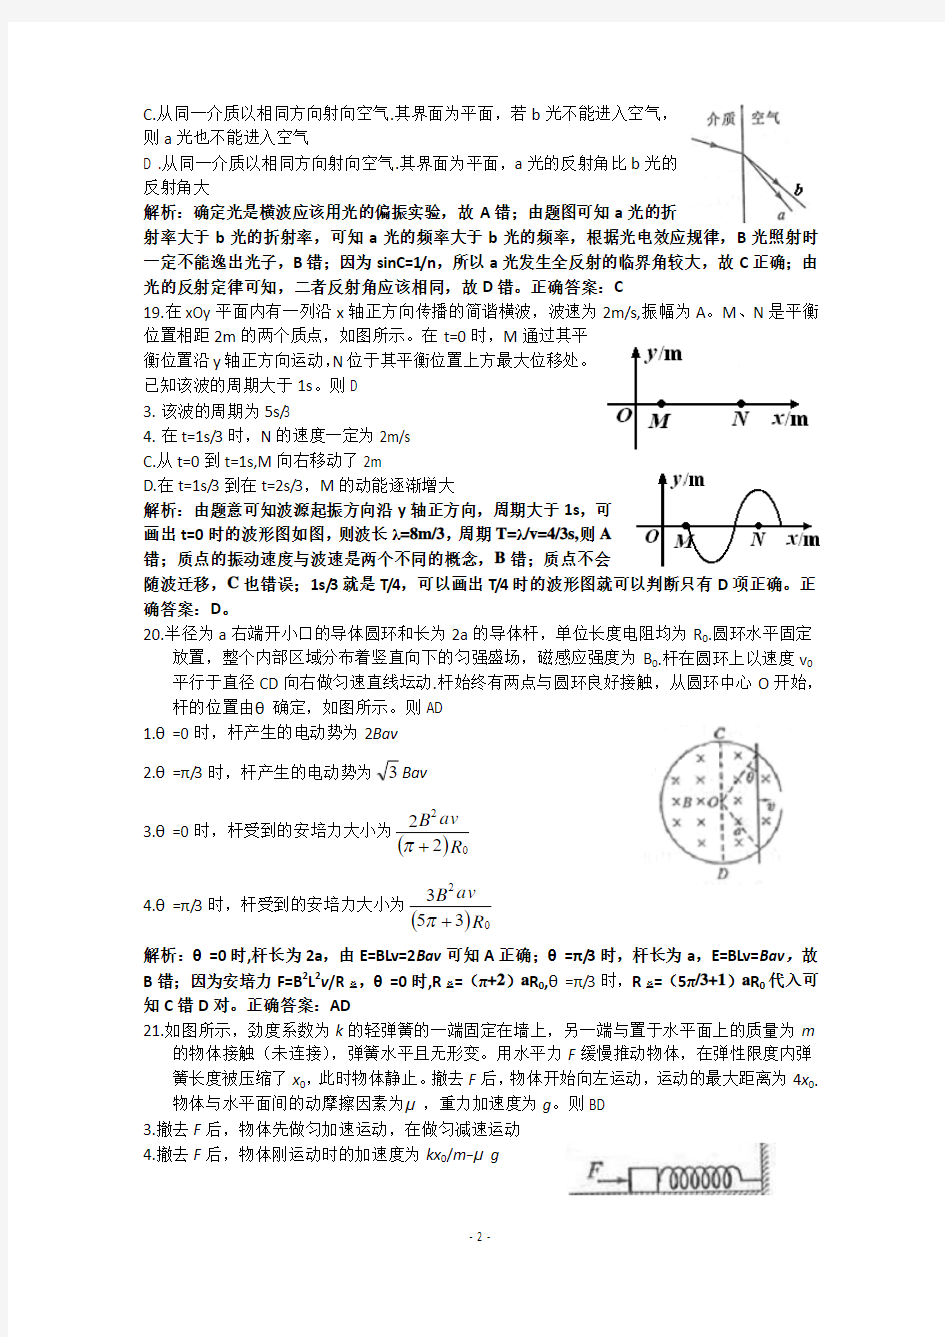 2012年物理高考试题答案及解析-四川